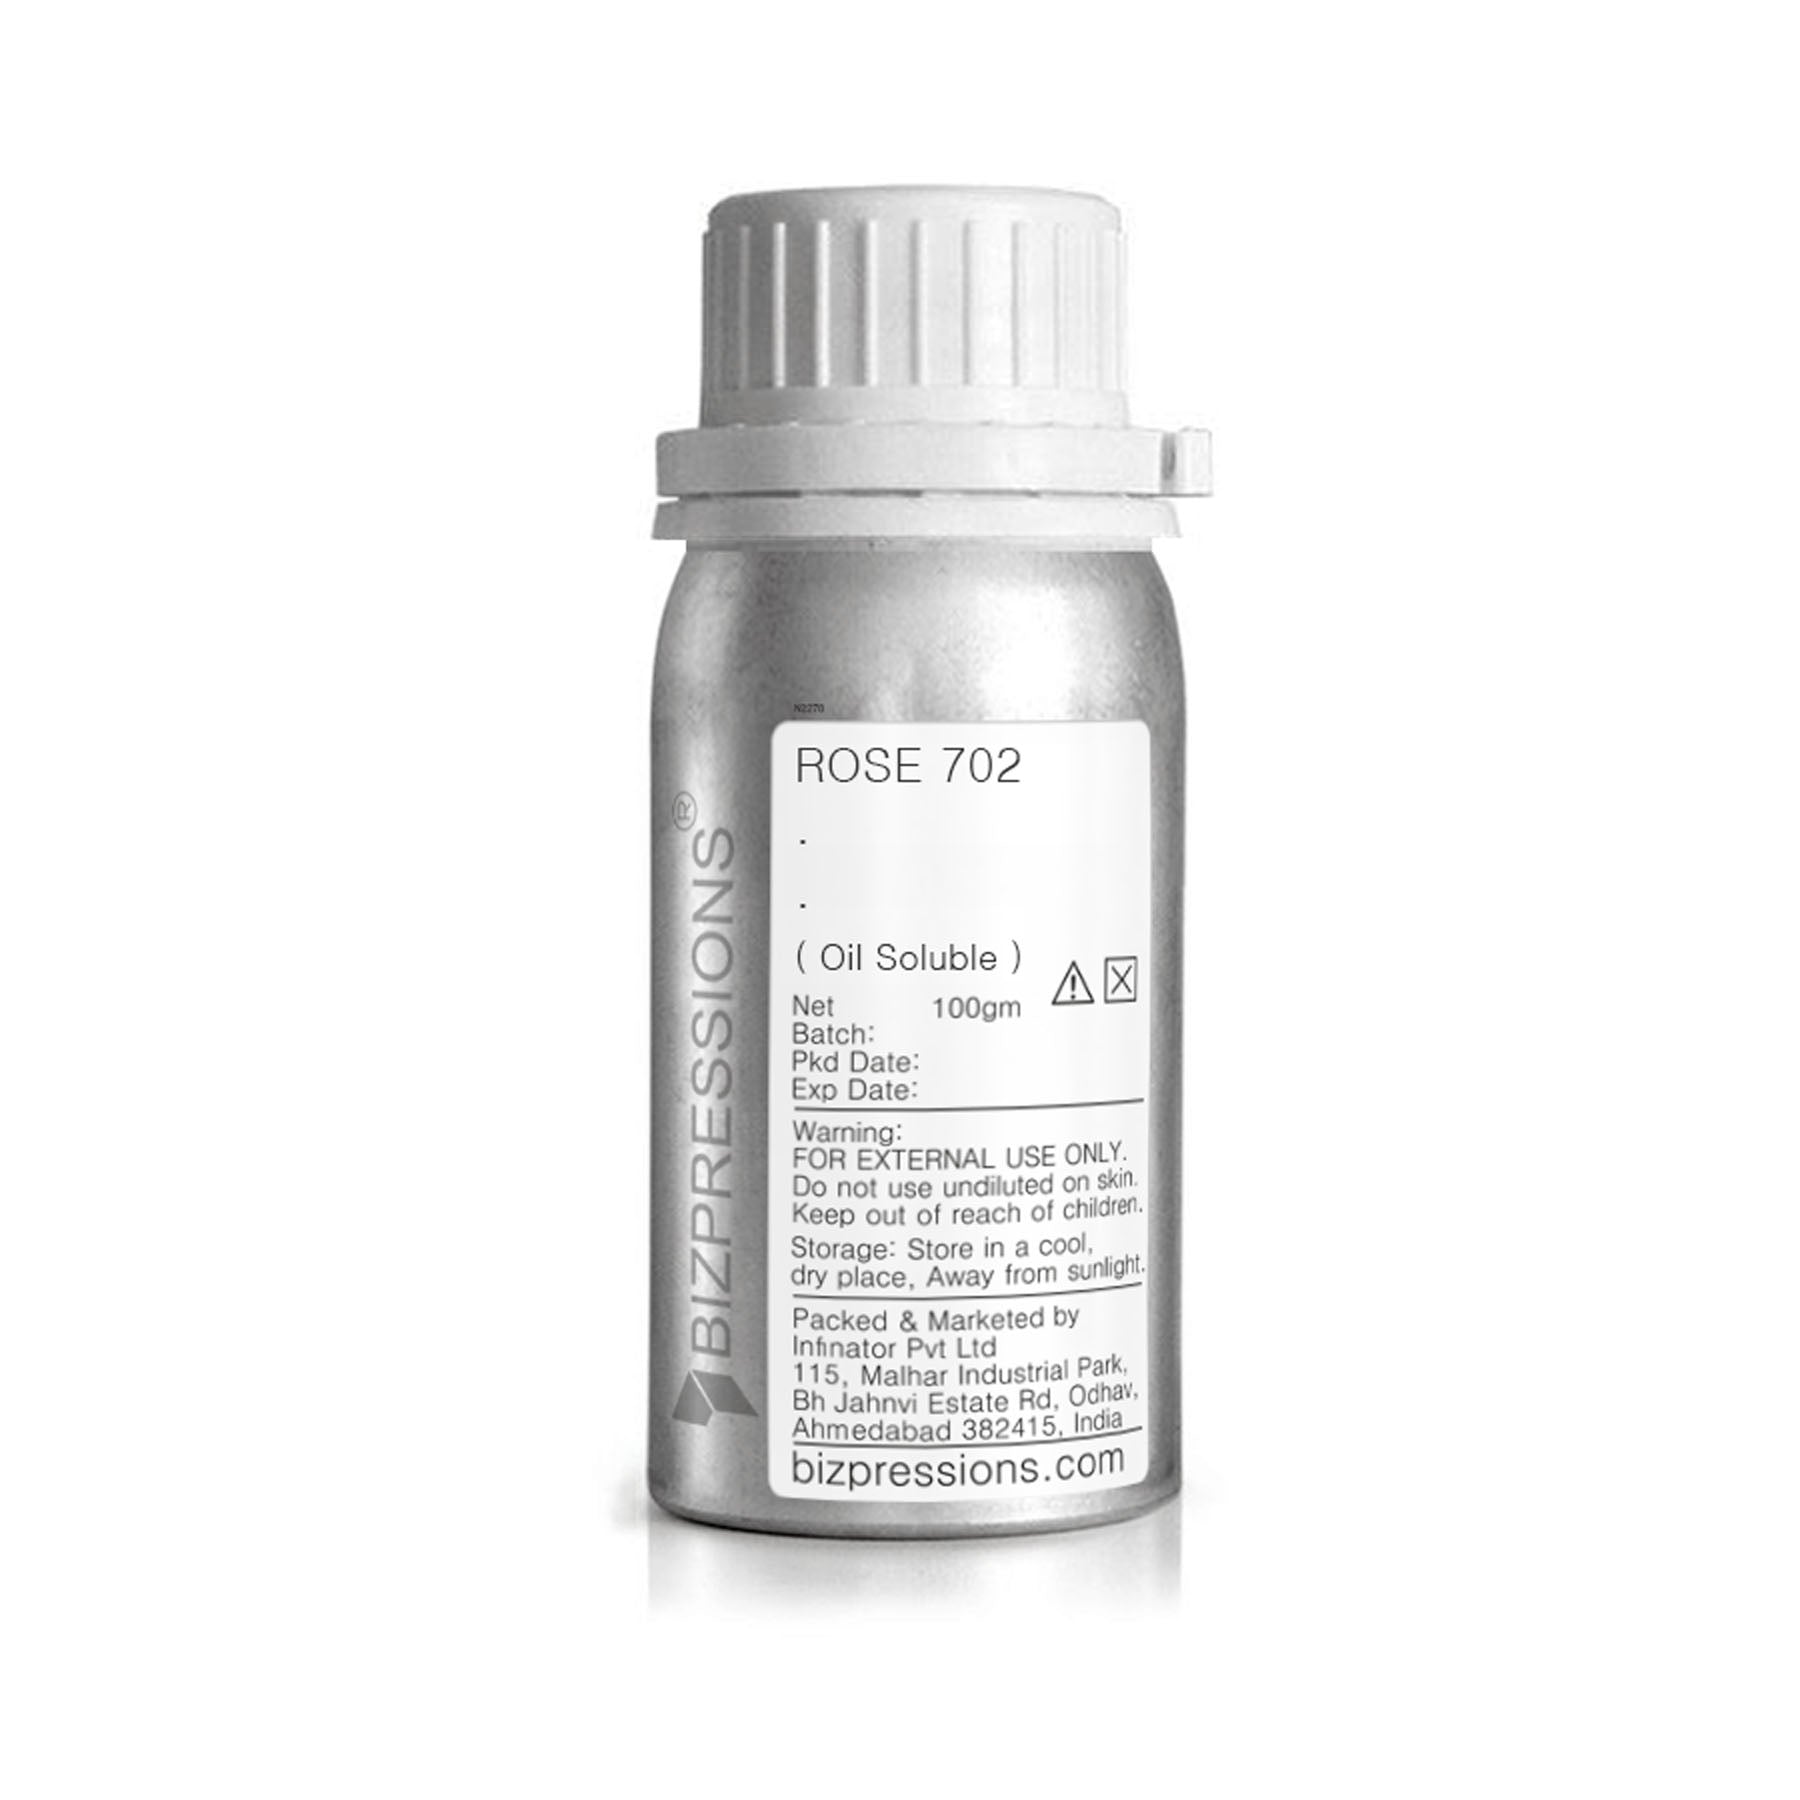 ROSE 702 - Fragrance ( Oil Soluble ) - 100 gm